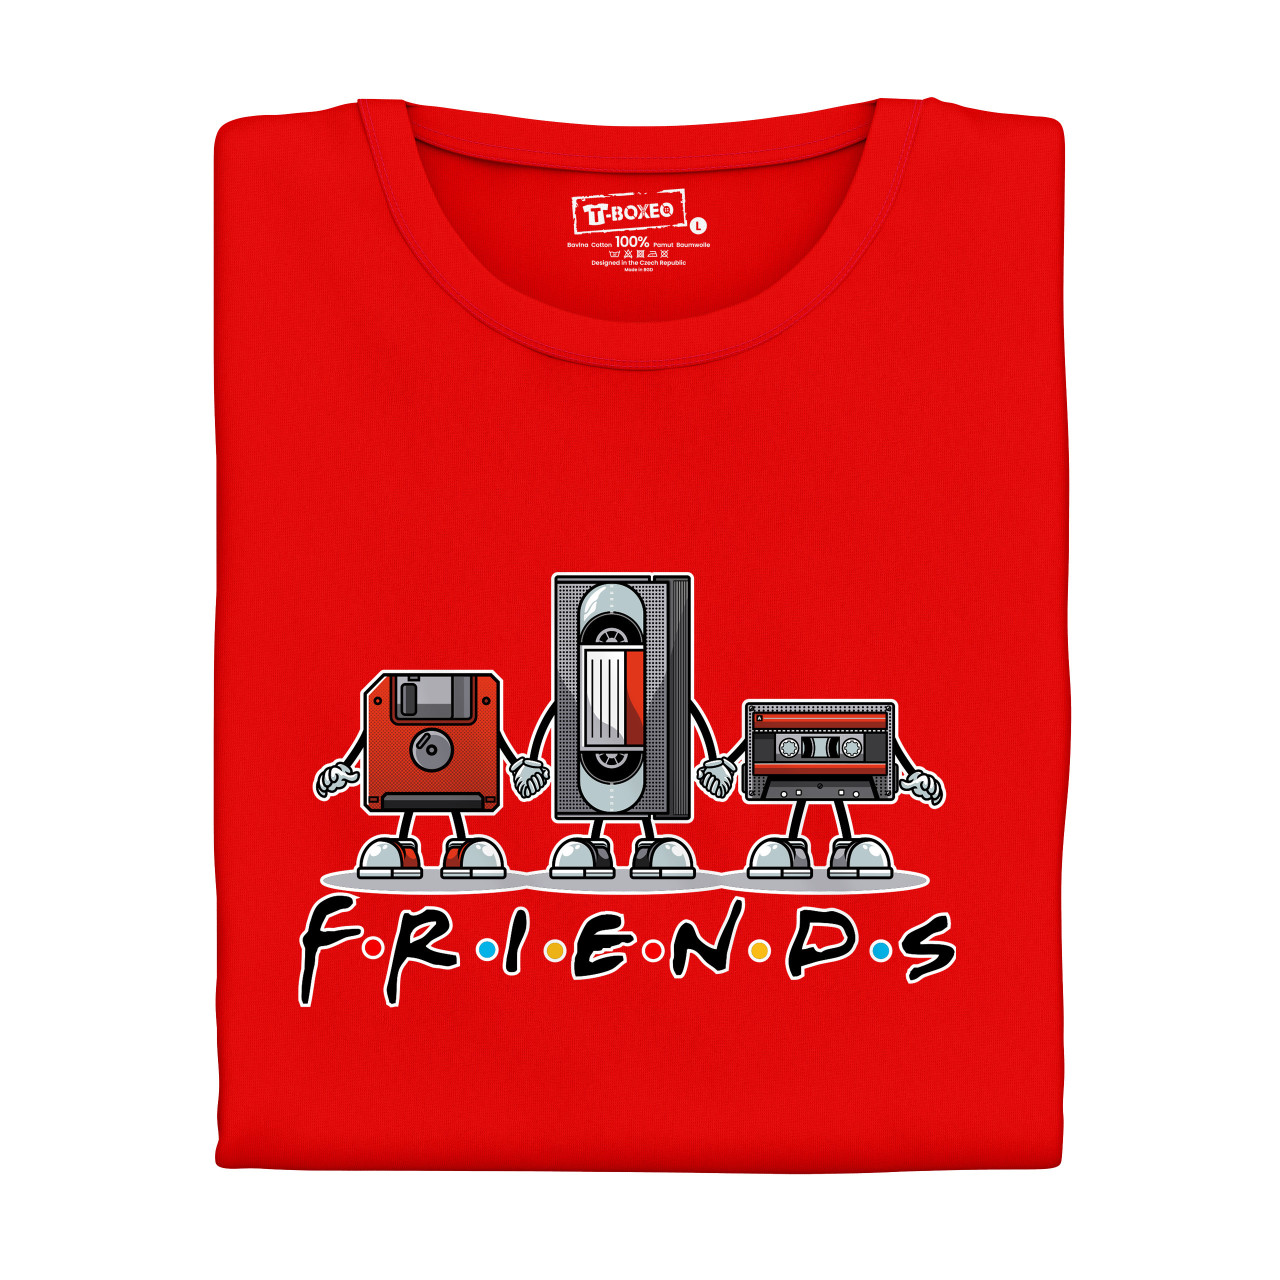 Pánské tričko s potiskem “Friends, Disketa a Kazety"